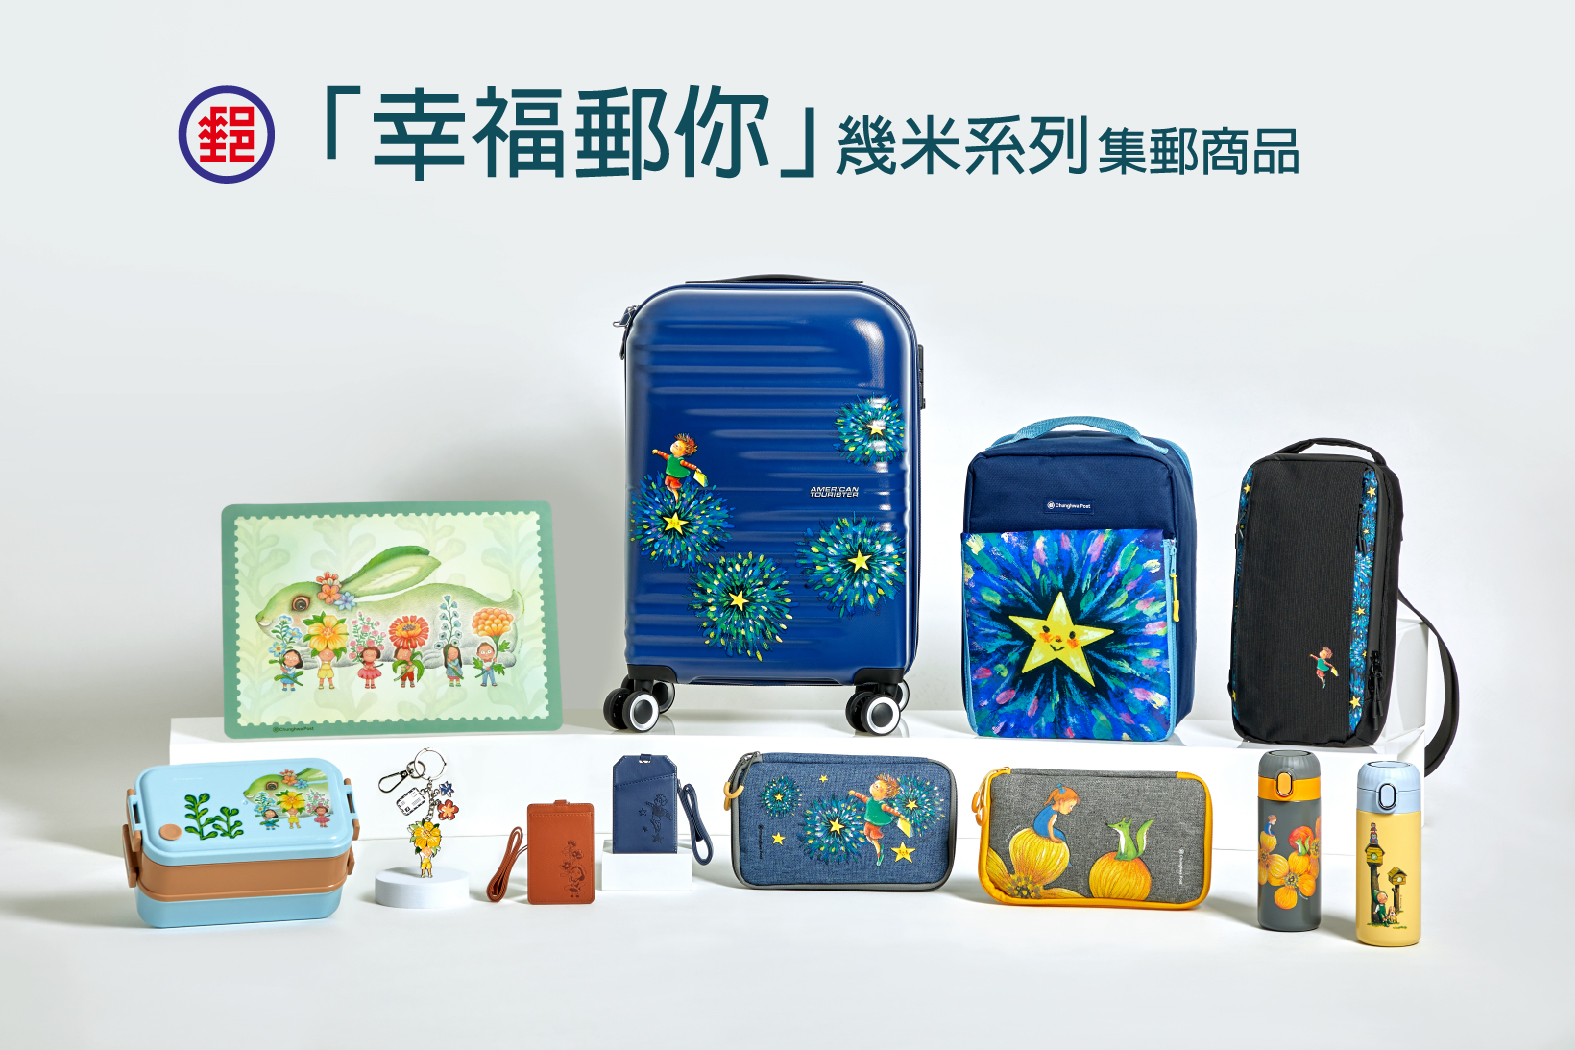 中華郵政推出第2波「幸福郵你」幾米系列集郵商品